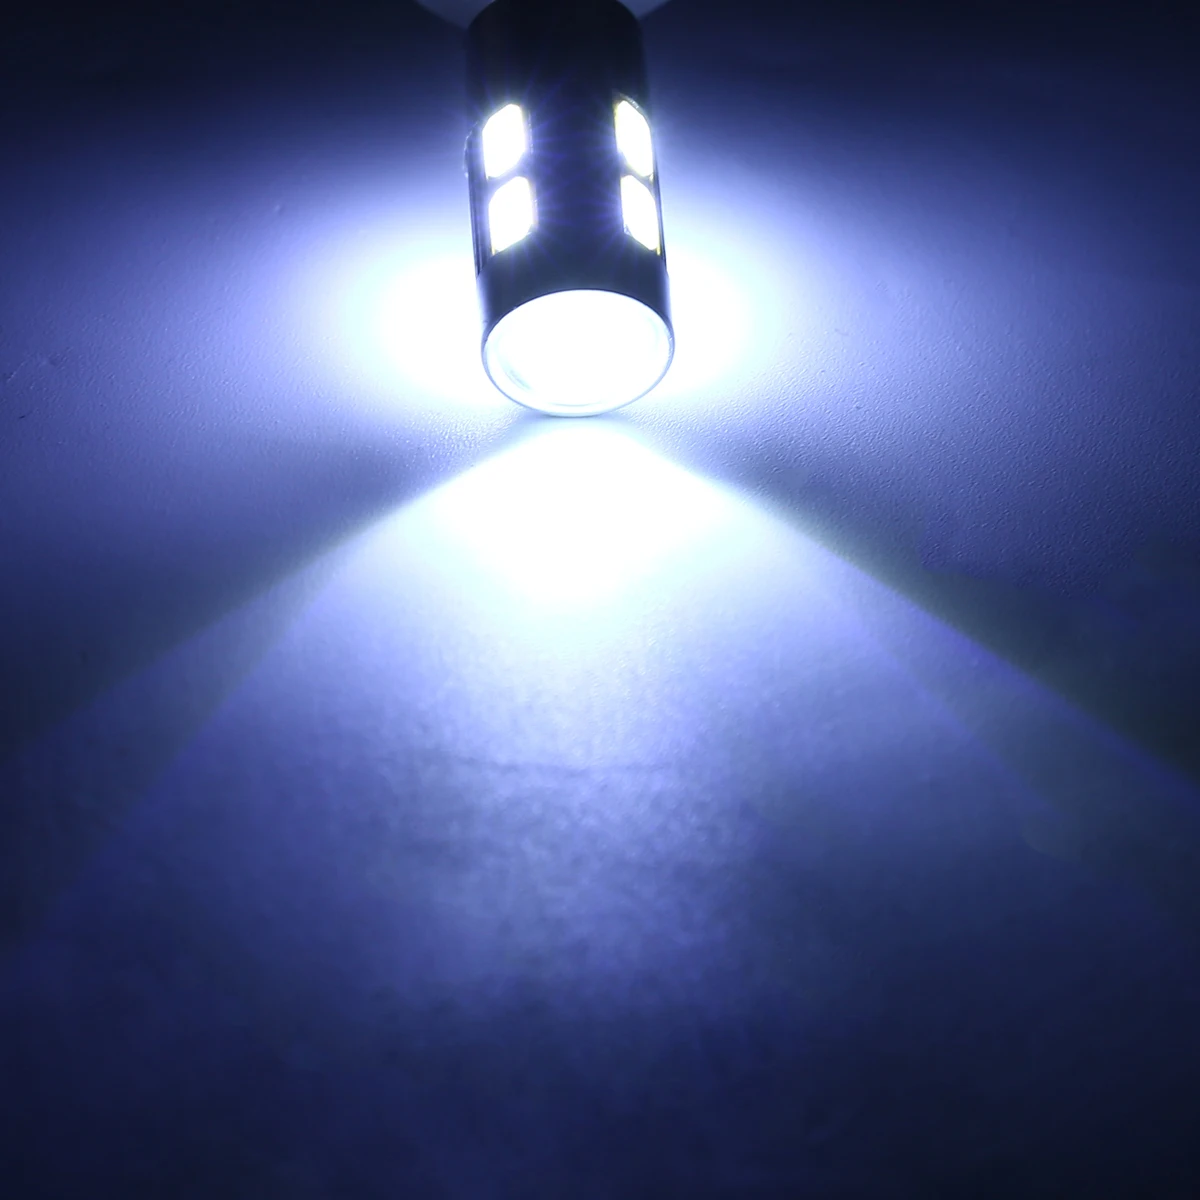 

New Arrival 4pcs H3 5630 10SMD LED Car Fog Driving Brake Light Lamp Bulb Super White for Car Light Source